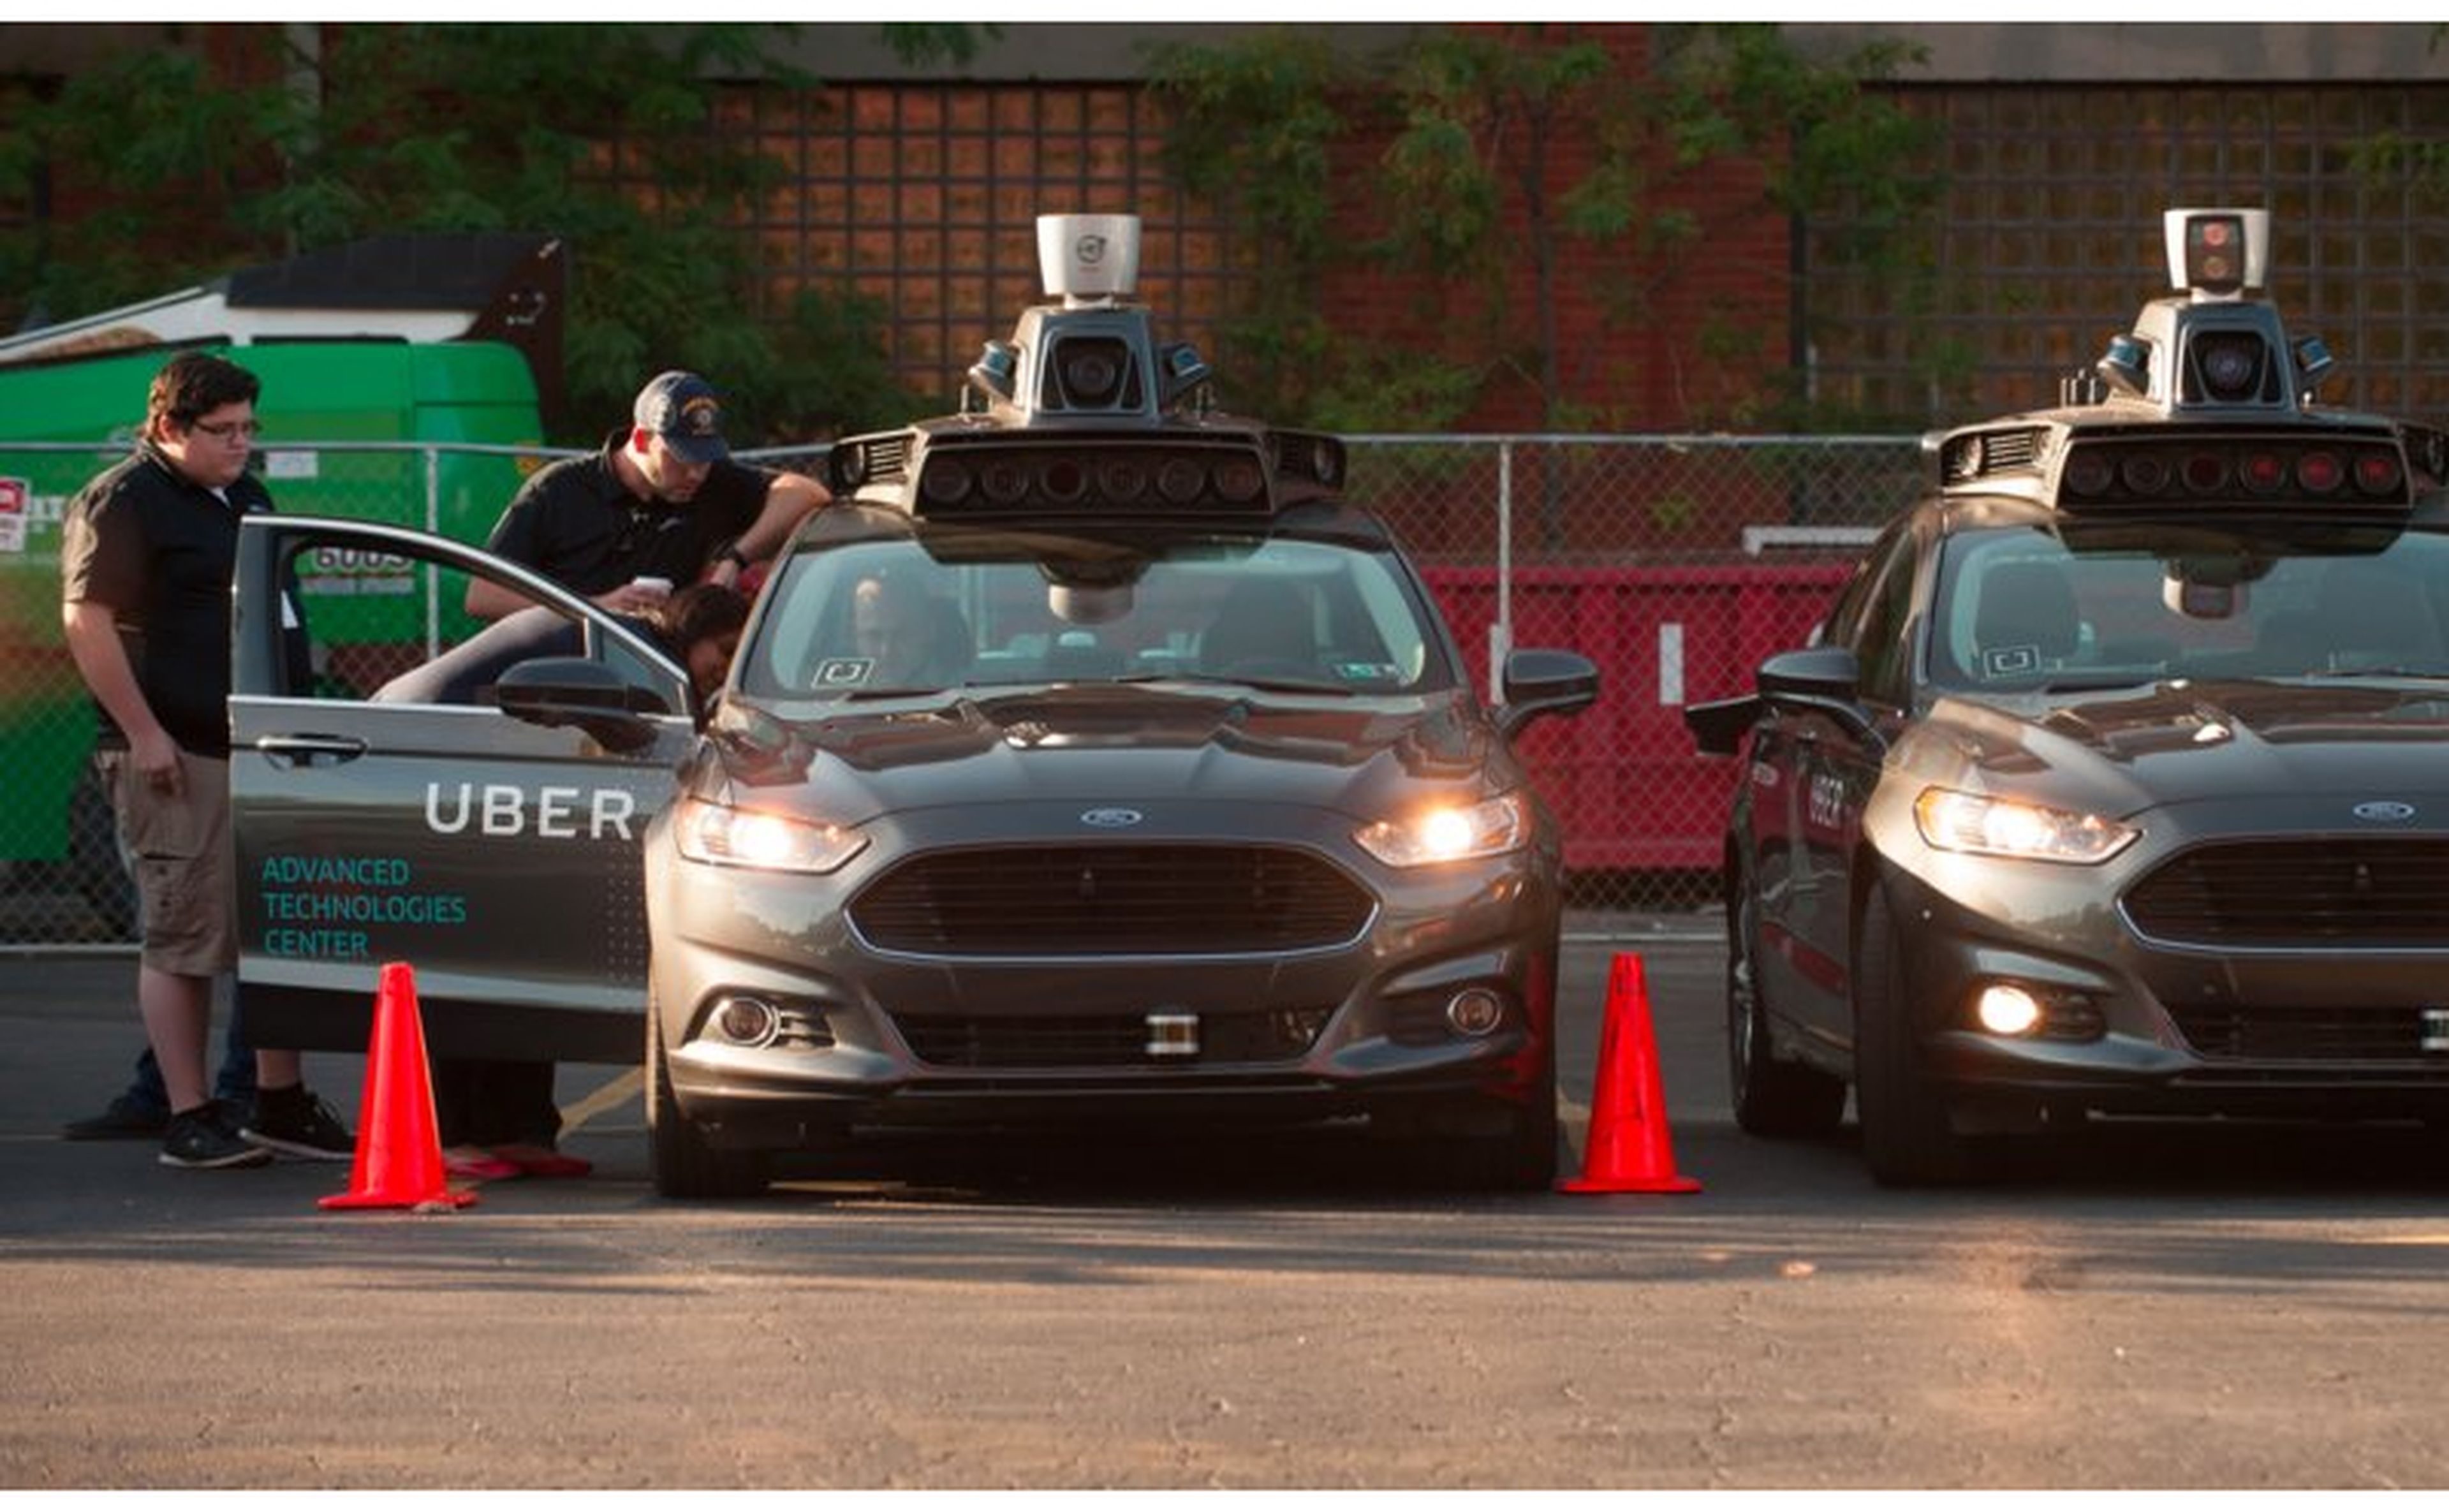 Dos modelos autónomos del Ford Fusion en un parking del centro técnico de Uber en Pittsburgh, Pennsylvania, en una fotografía de archivo.